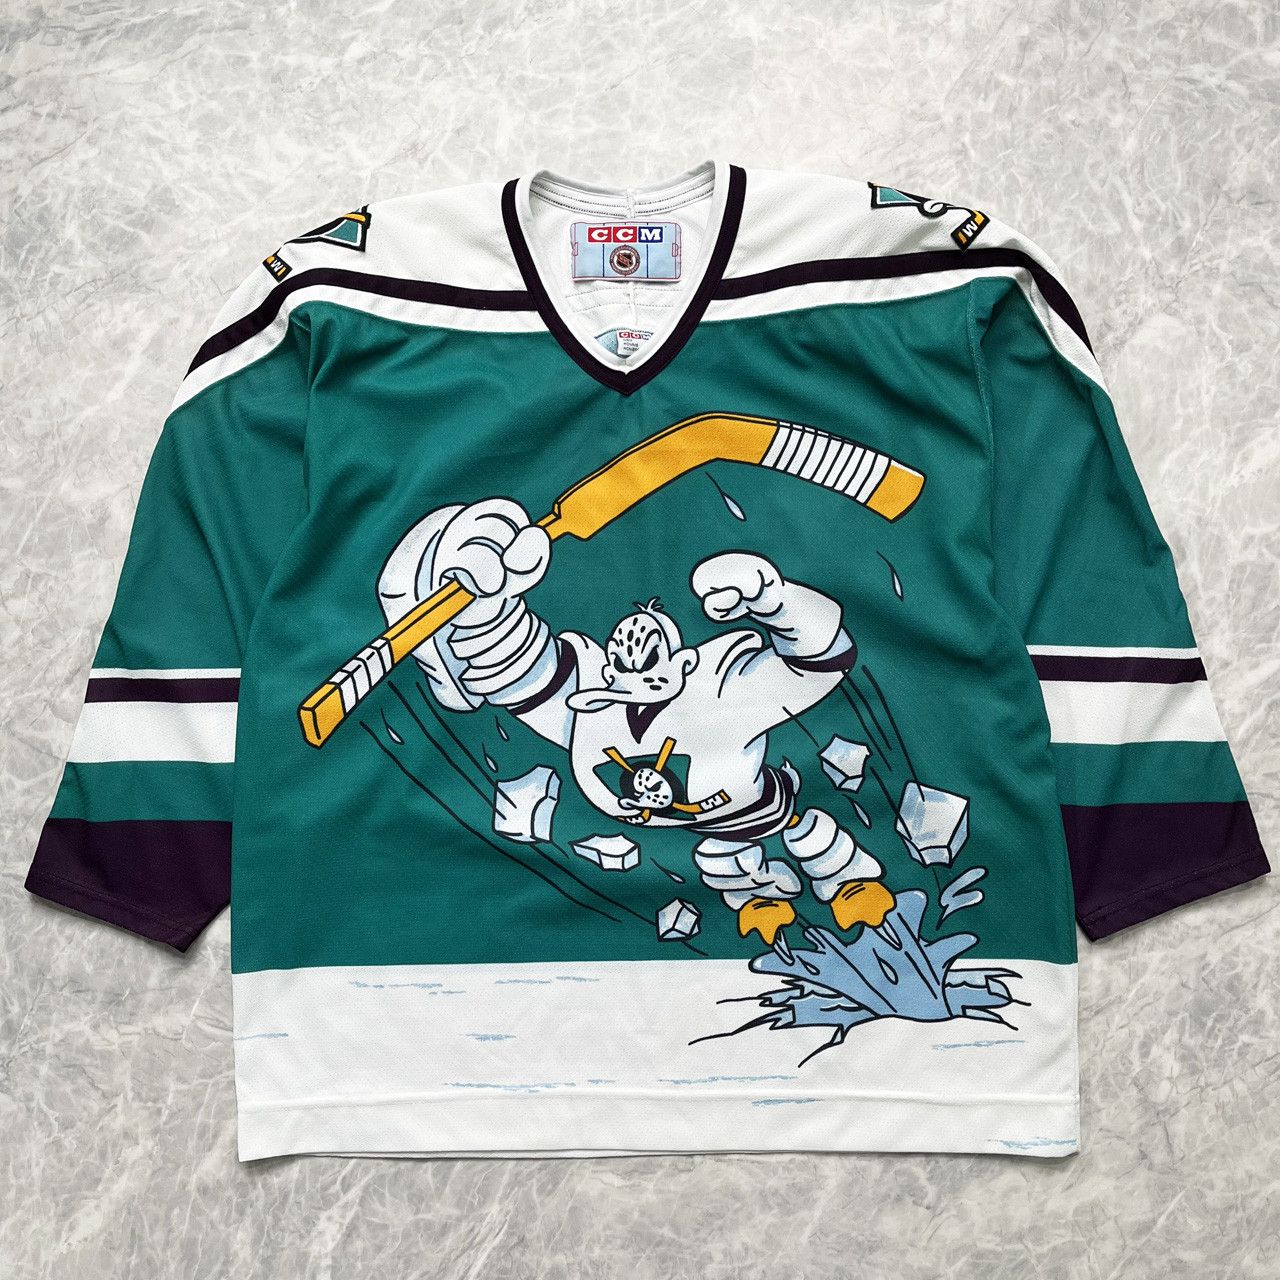 Anaheim Mighty Ducks Ice Hockey Jersey CCM 90's